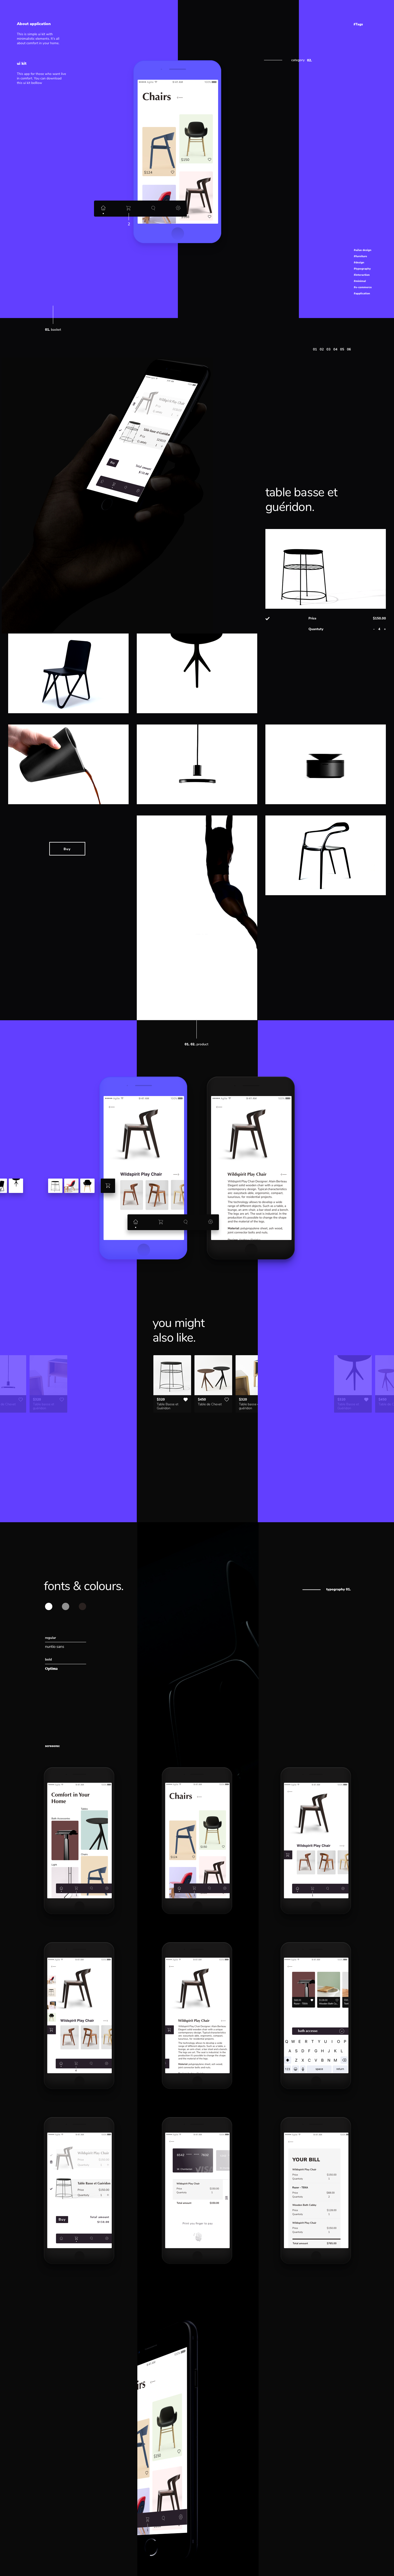 e-commerce ui kit ui ux app design shop minimal clean